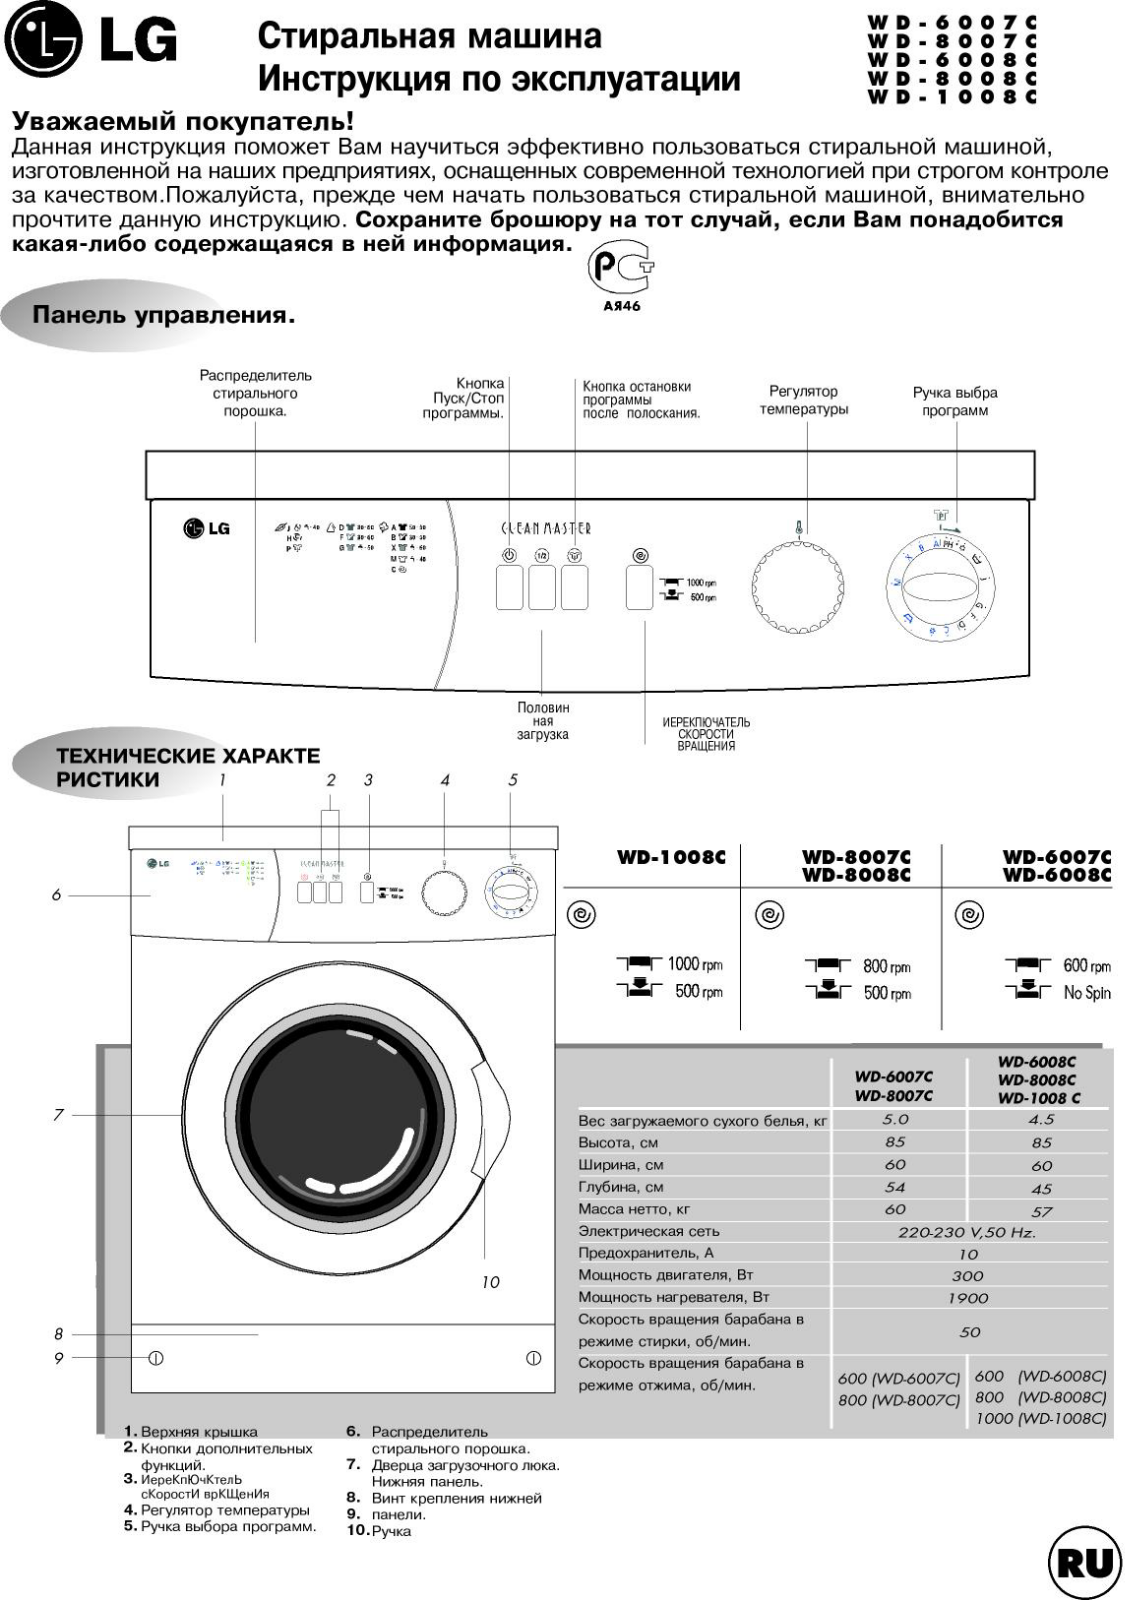 LG WD-6008C User Manual